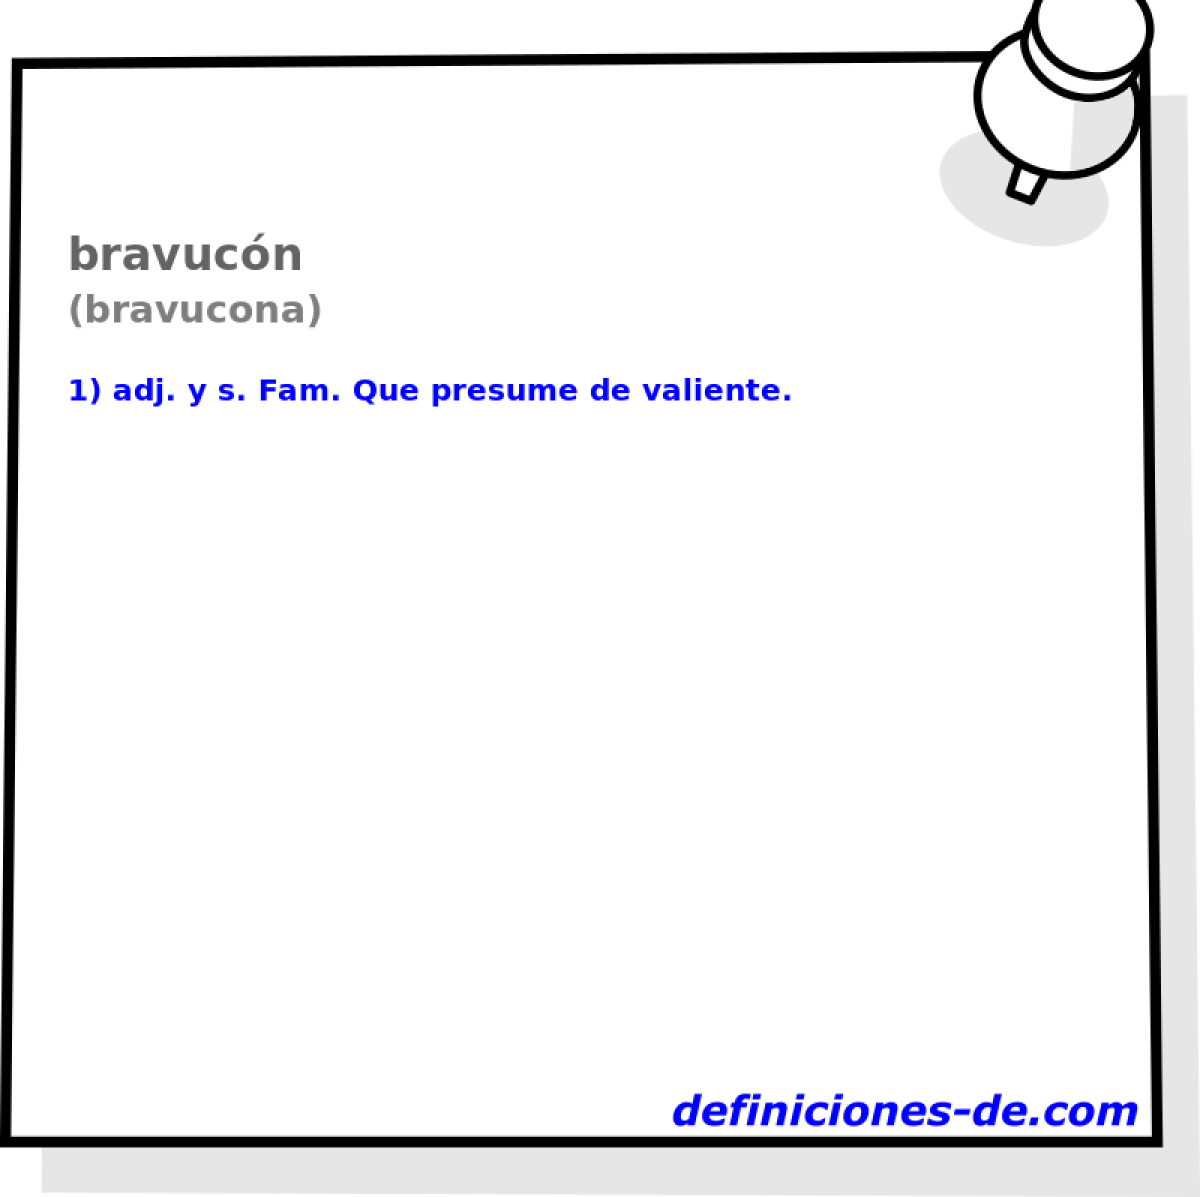 bravucn (bravucona)